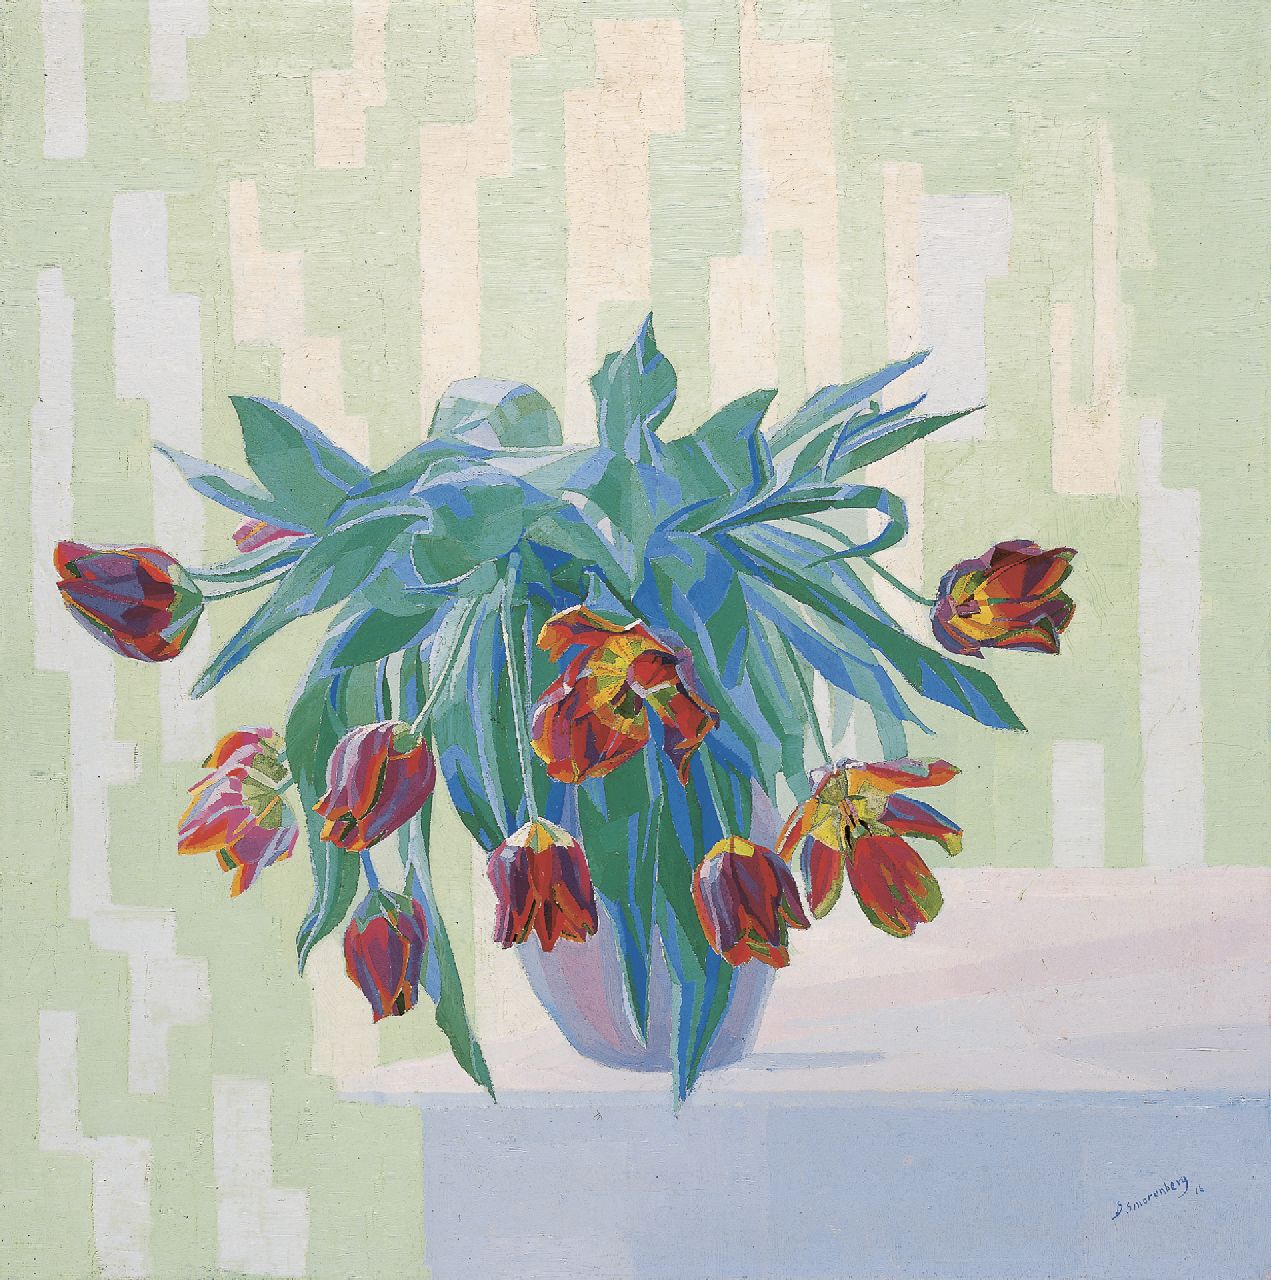 Smorenberg D.  | Dirk Smorenberg, Stilleven met tulpen in een vaas, olieverf op doek 66,8 x 66,5 cm, gesigneerd rechtsonder en gedateerd '16